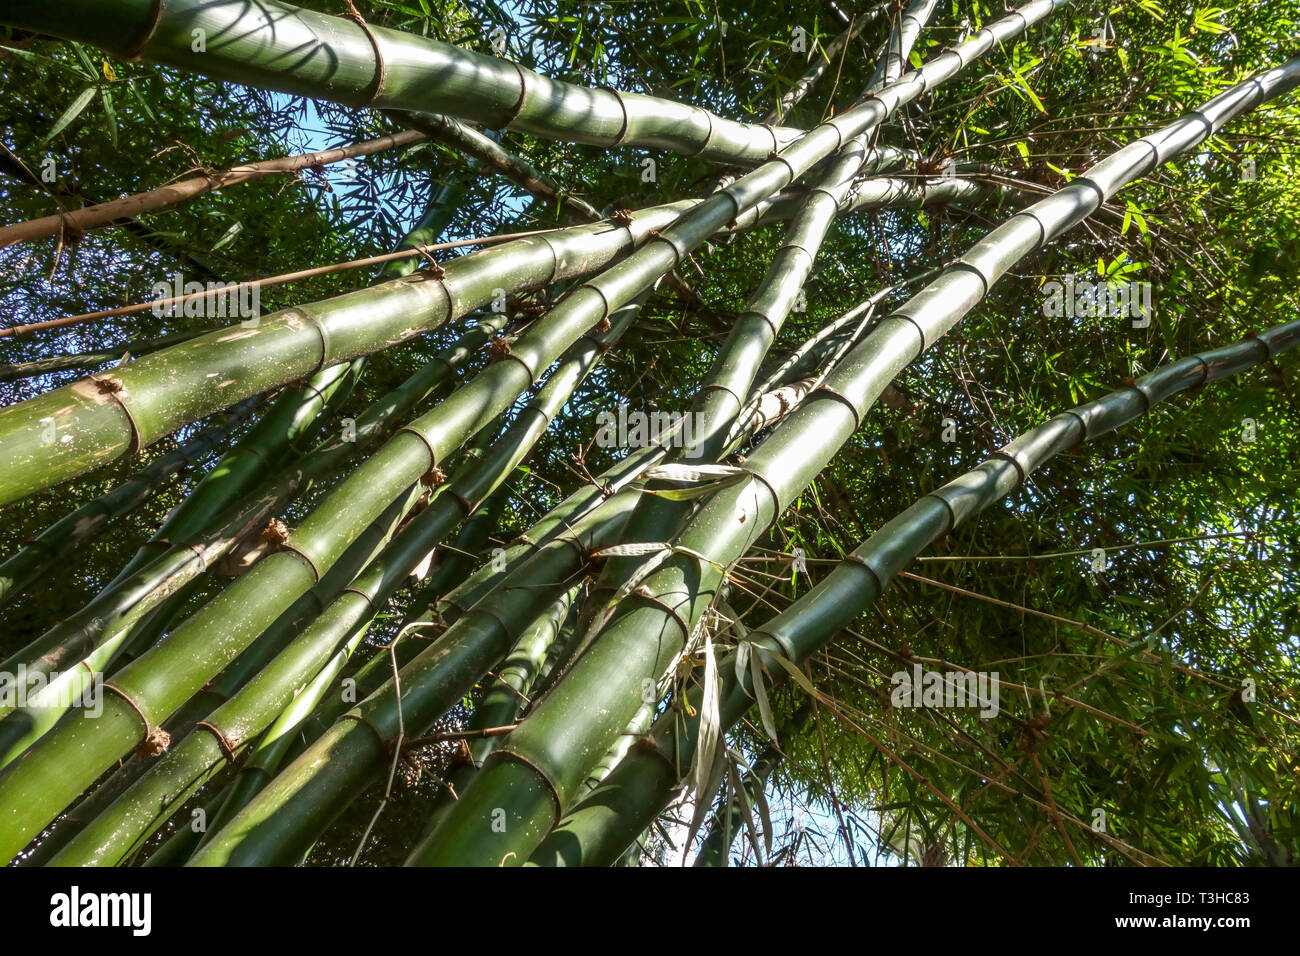 Giant bamboo Dendrocalamus giganteus Stock Photo